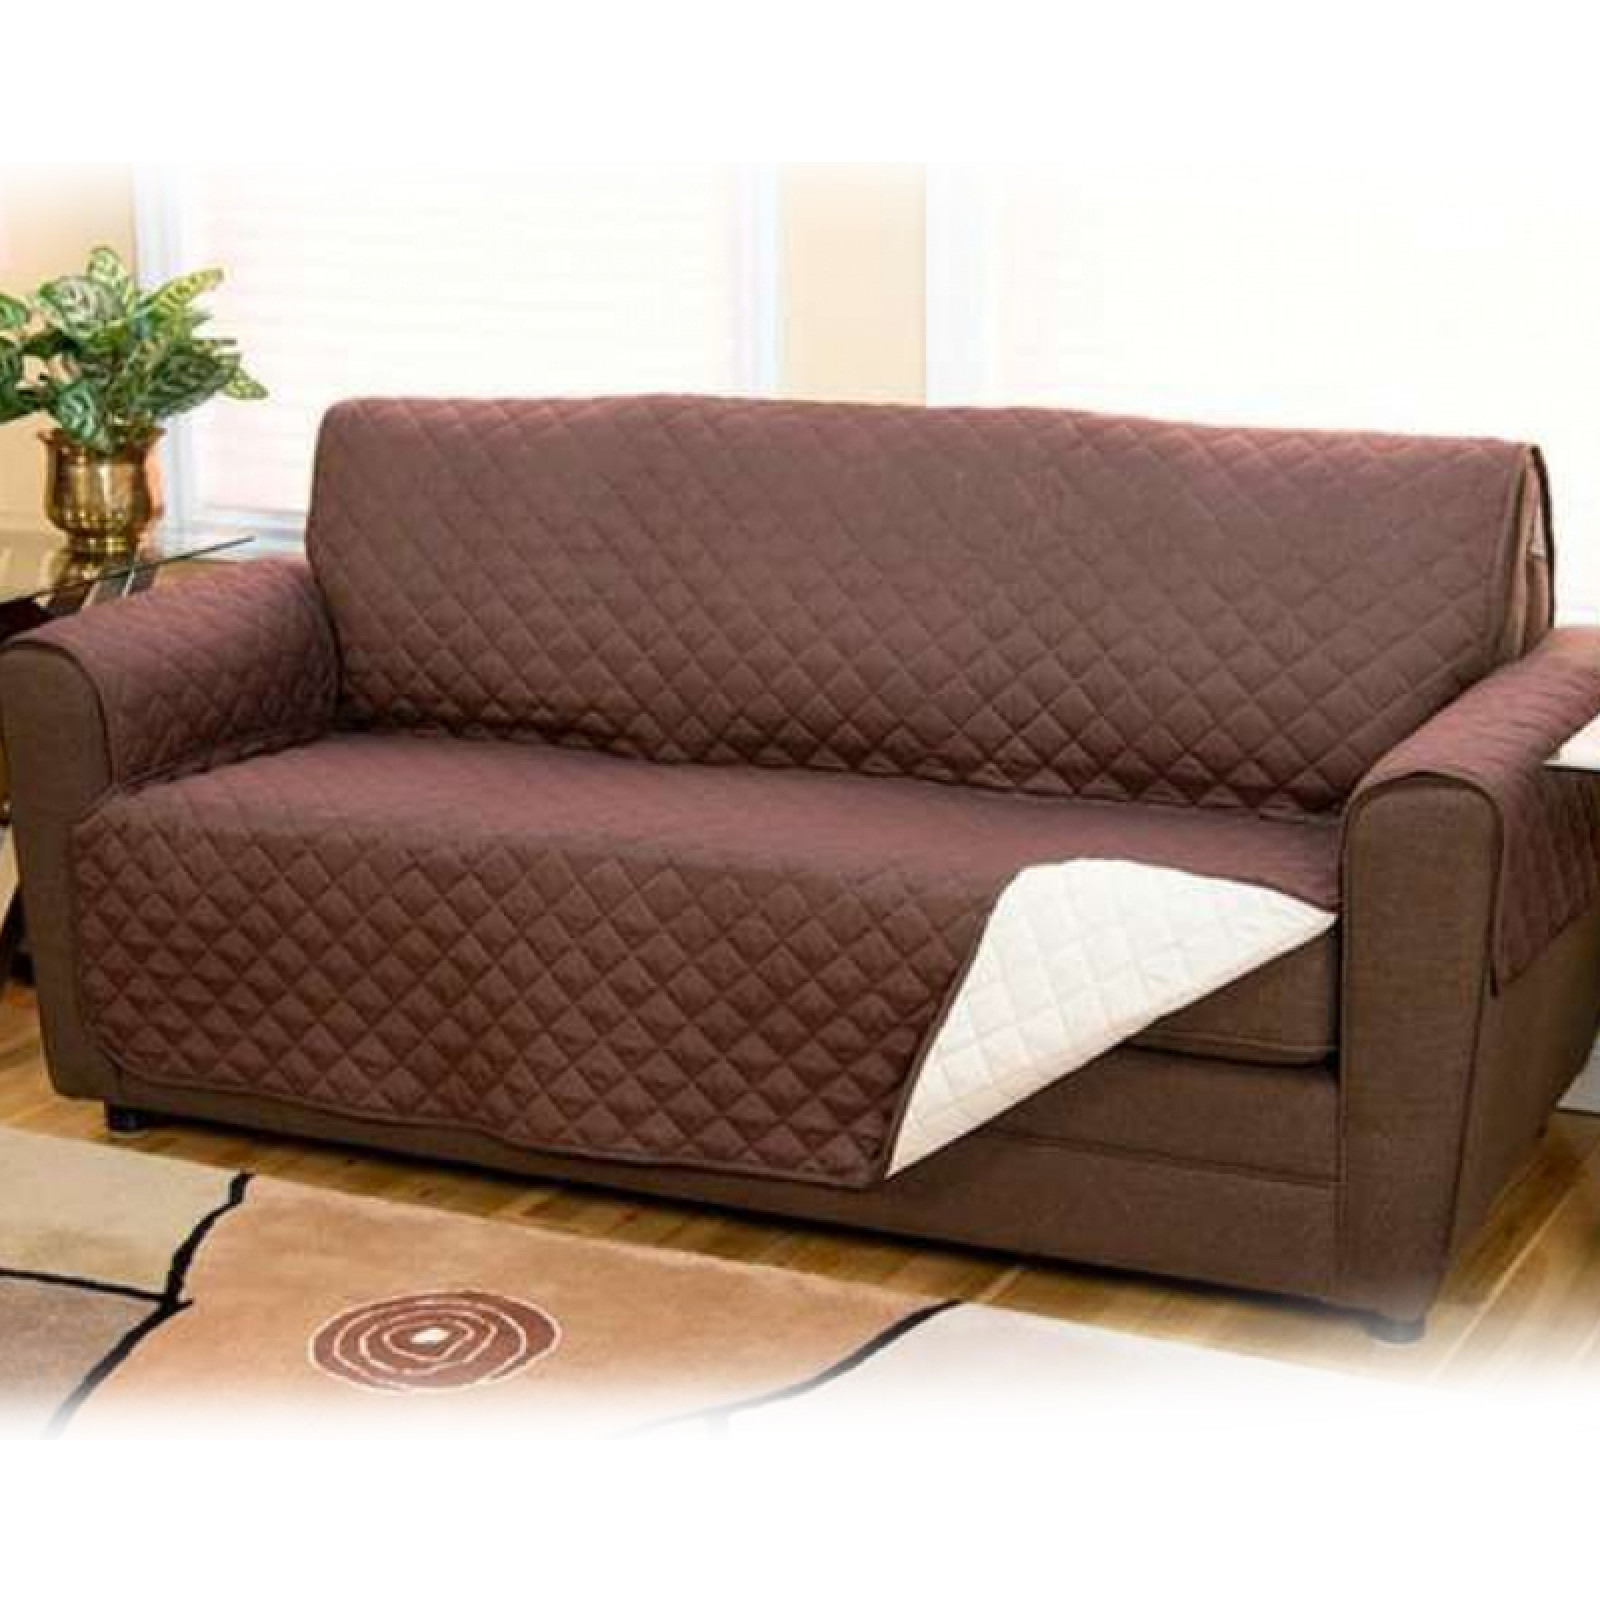 Коврик покрывало для животных Couch Coaf для кресла и диванов 130769